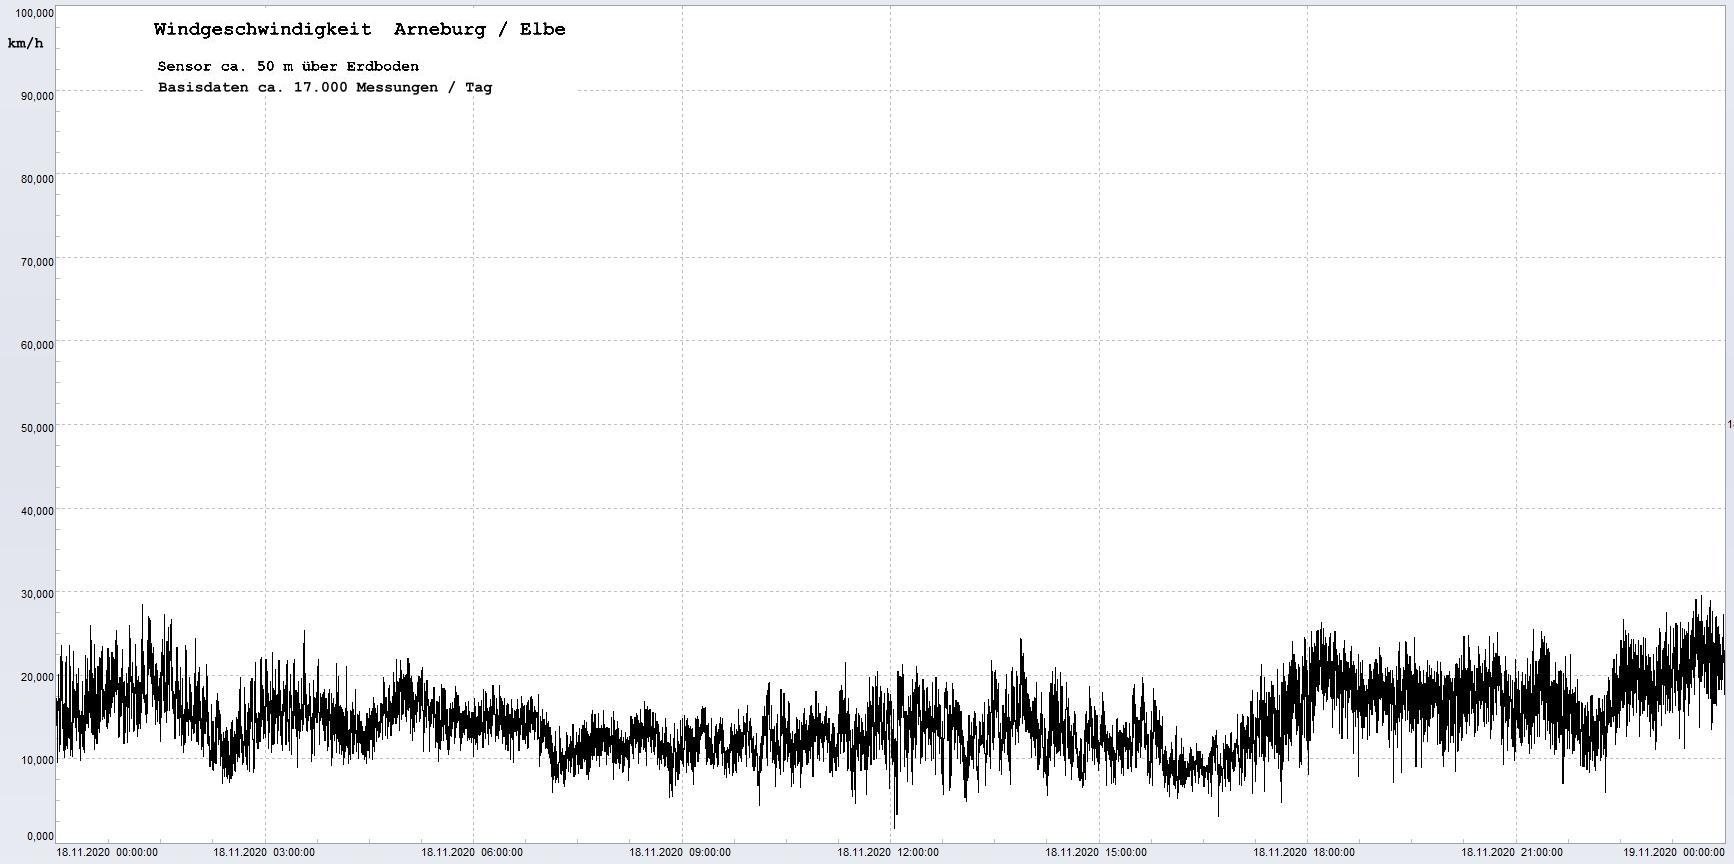 Arneburg Winddaten 18.11.2020, 
  Sensor auf Gebude, ca. 50 m ber Erdboden, 5s-Aufzeichnung